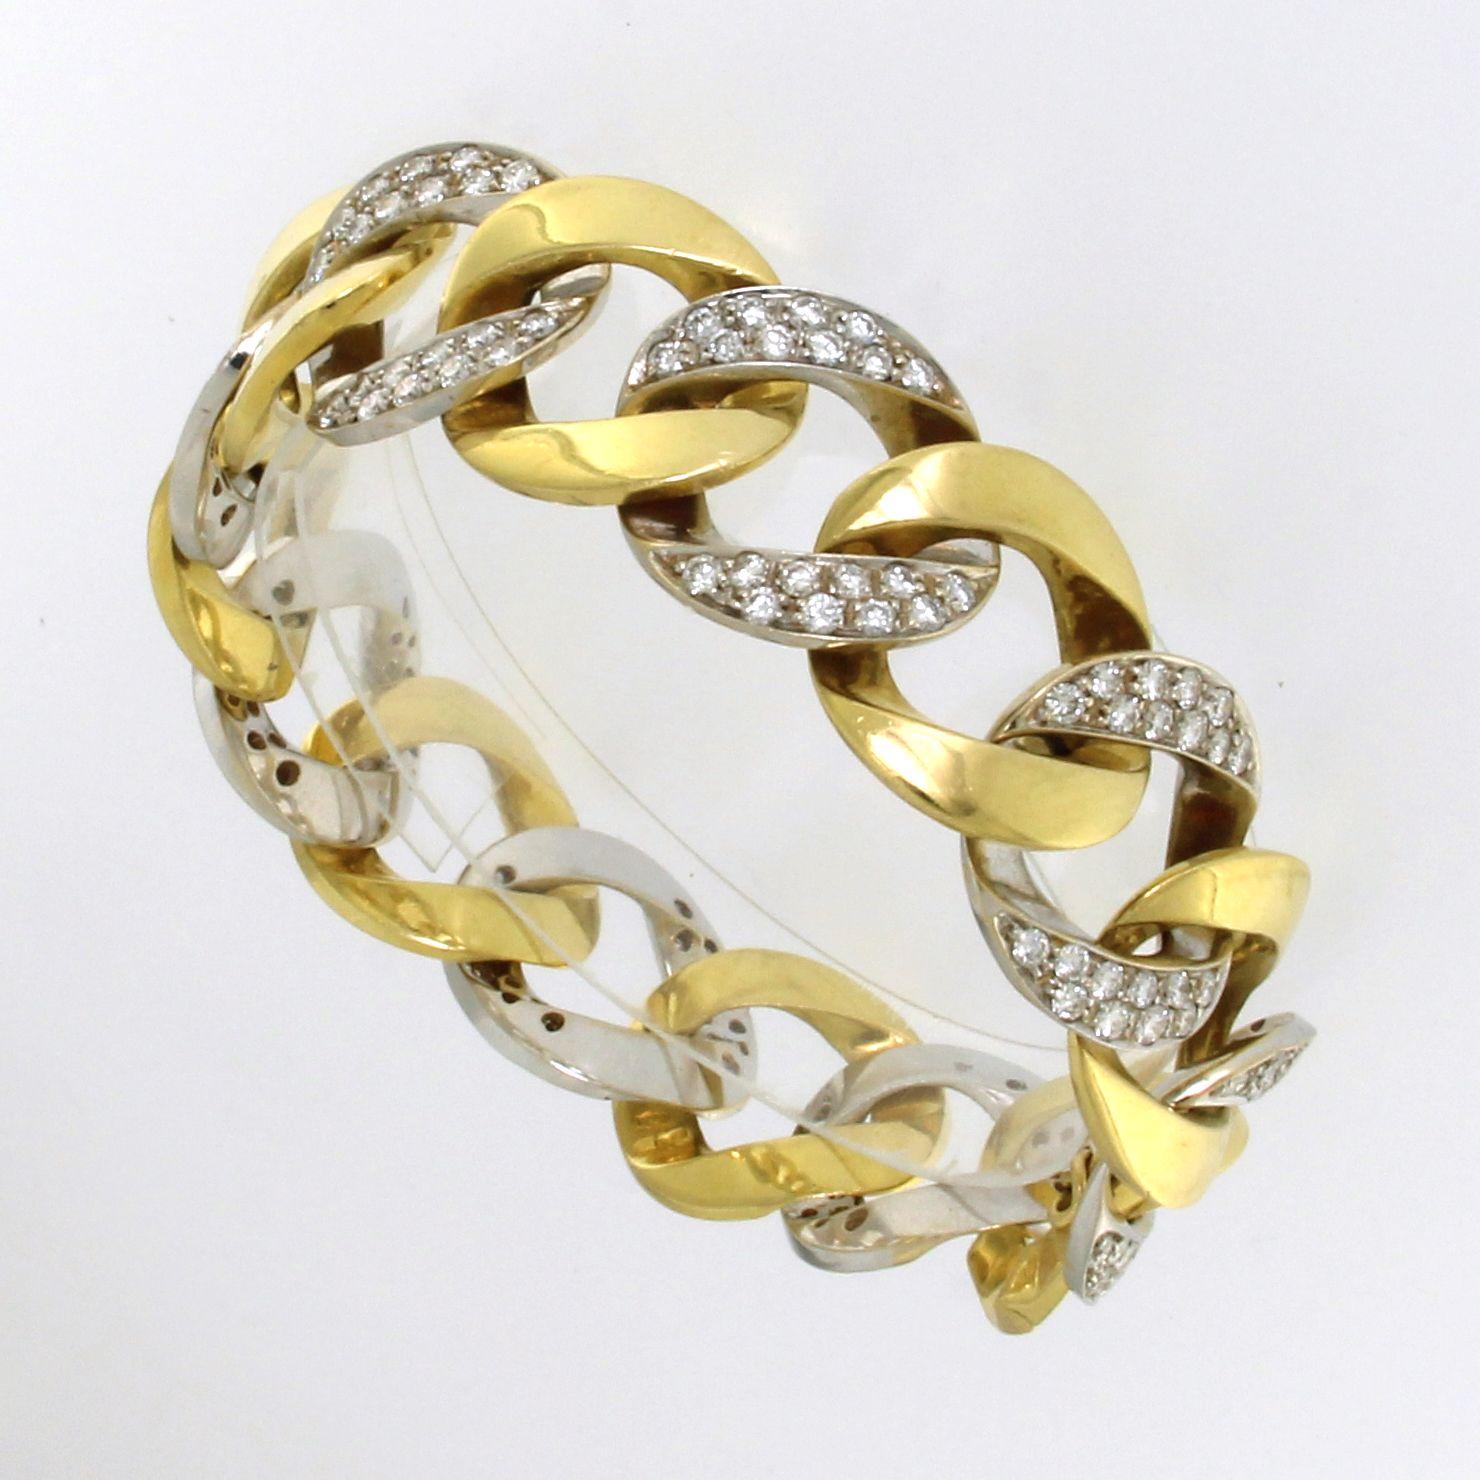 Bracelet classique de type groumette, maillons massifs brillants et pavés alternés.
Poids total d'or g. 71
Diamants ct. 4.80
